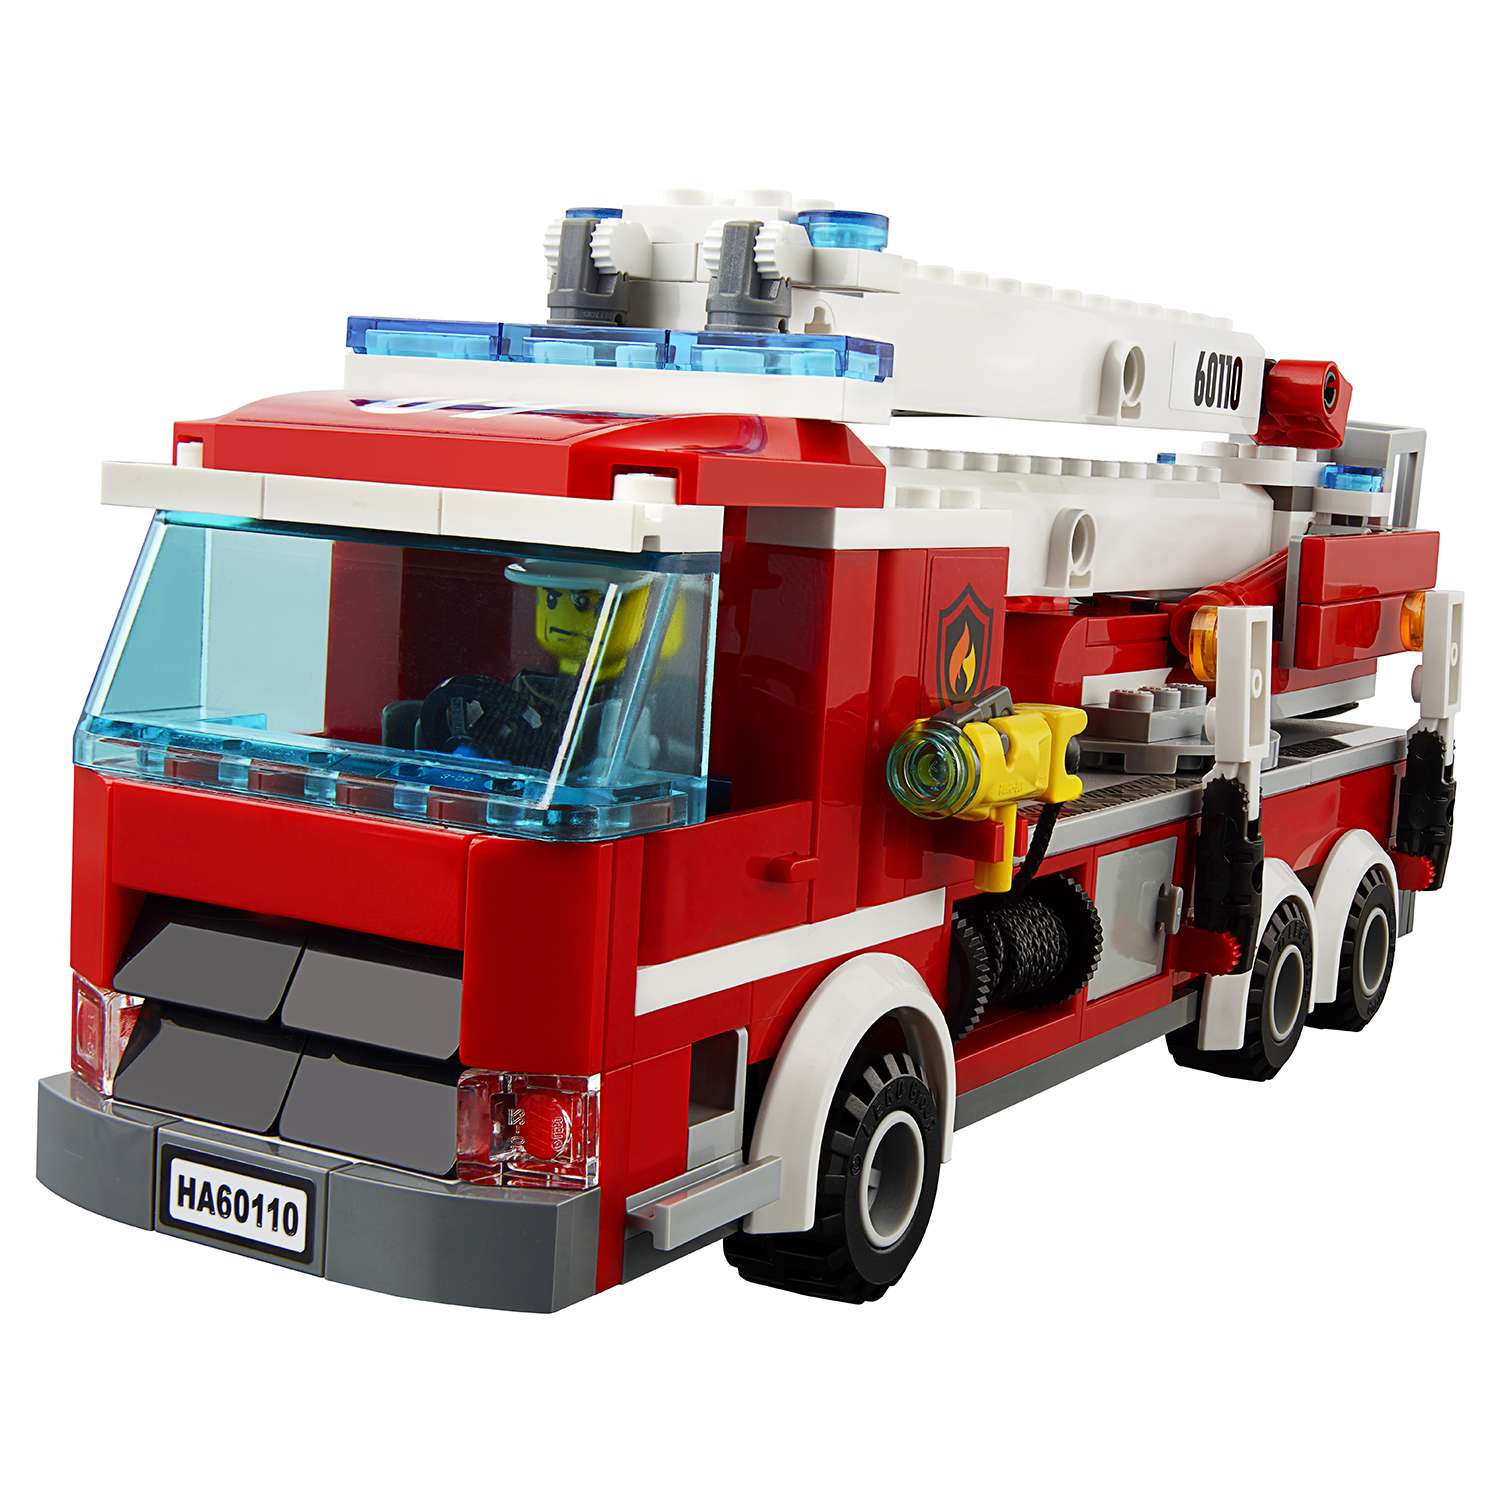 Конструктор LEGO City Fire Пожарная часть (60110) - фото 19